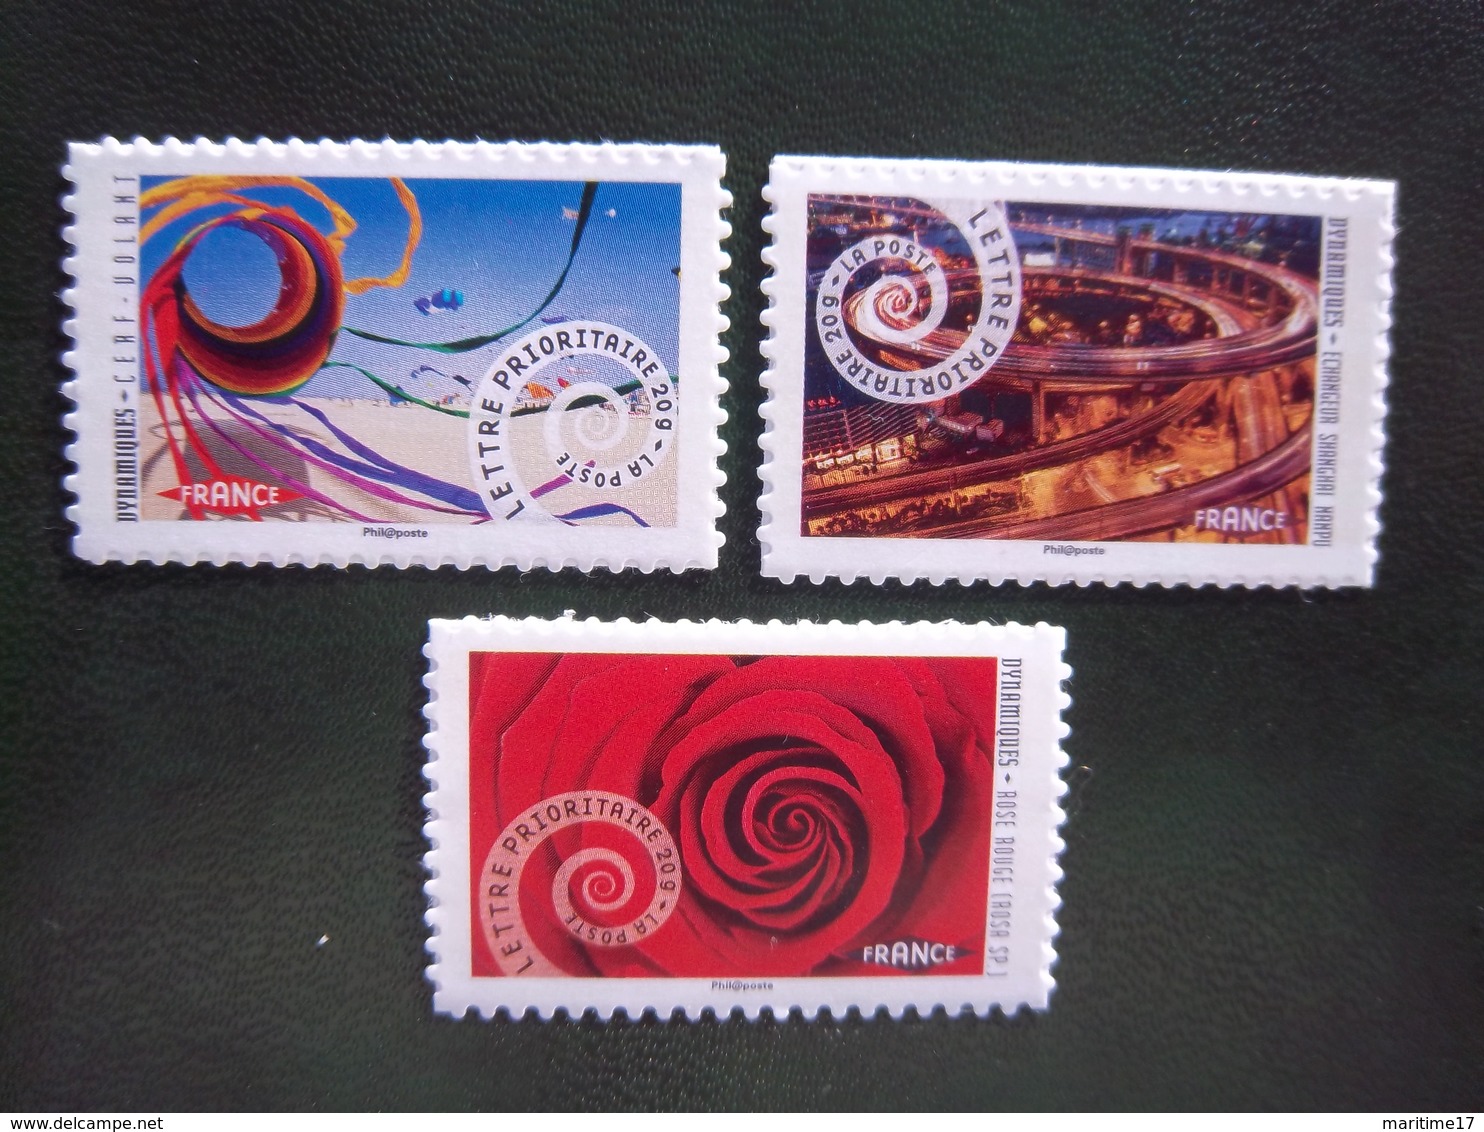 Autoadhésifs France 2014 / Dynamiques-3 Autocollants (930a - La Rose) + (932a - échangeur) + (933a - Cerf-volant) Neuf** - Unused Stamps